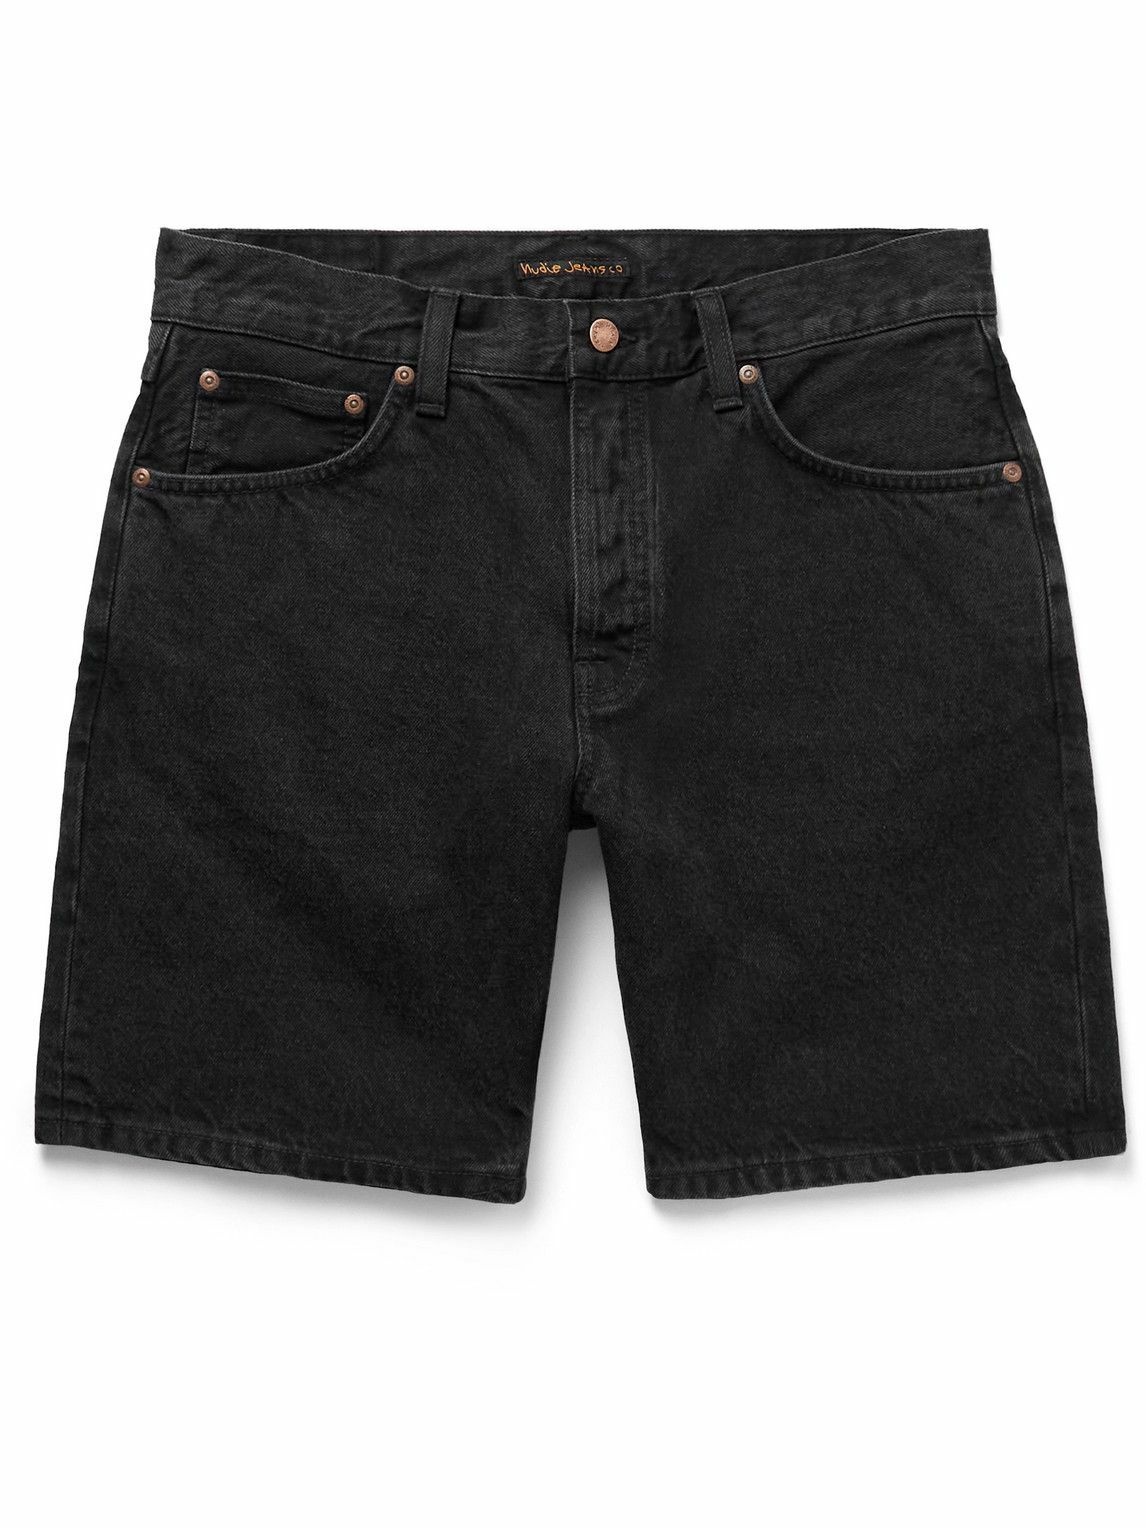 Nudie Jeans - Seth Straight-Leg Denim Shorts - Black Nudie Jeans Co